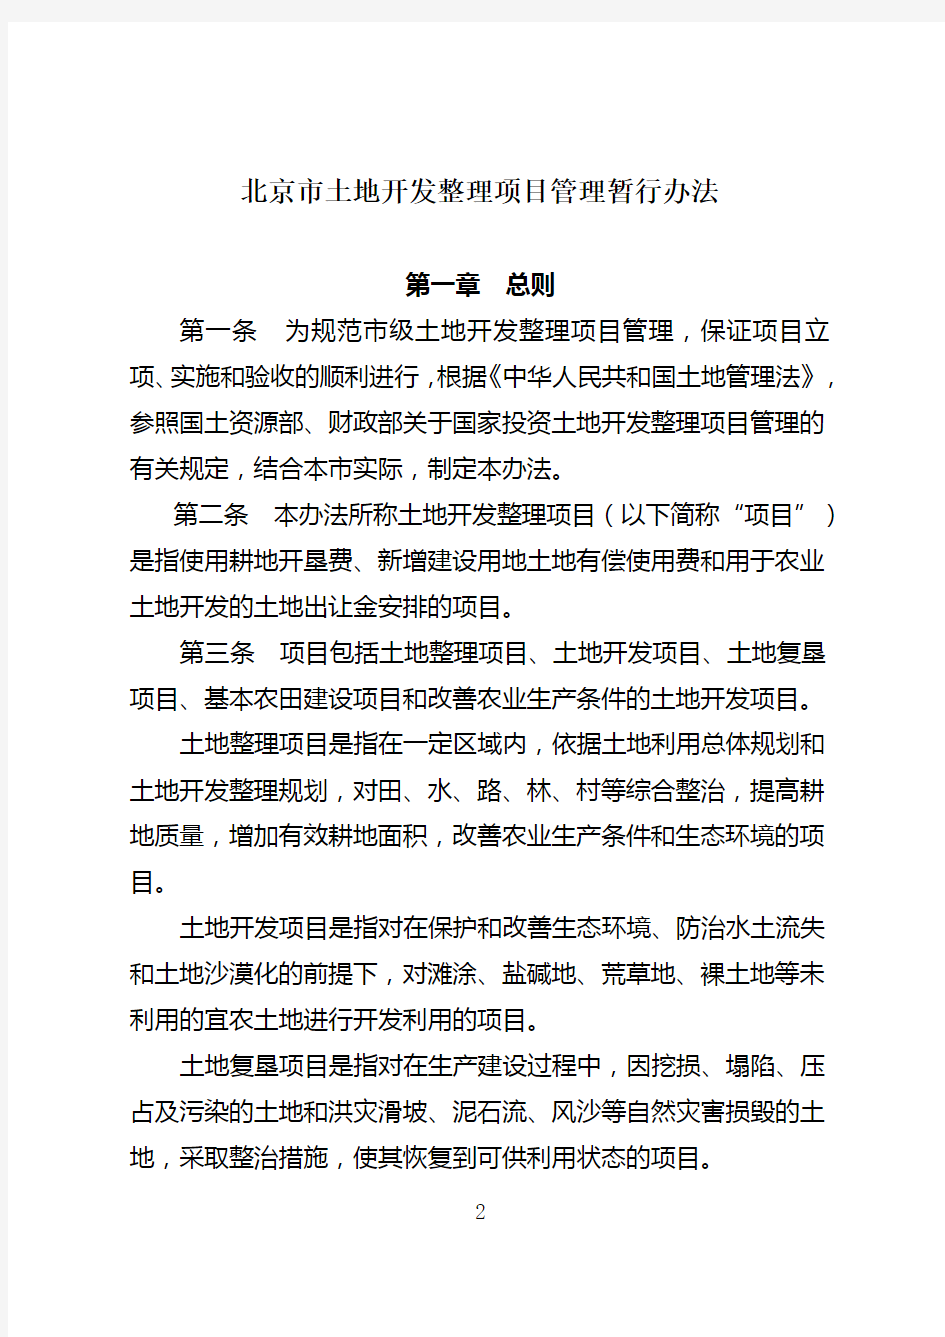 关于印发《北京市土地开发整理项目管理暂行办法》的通知